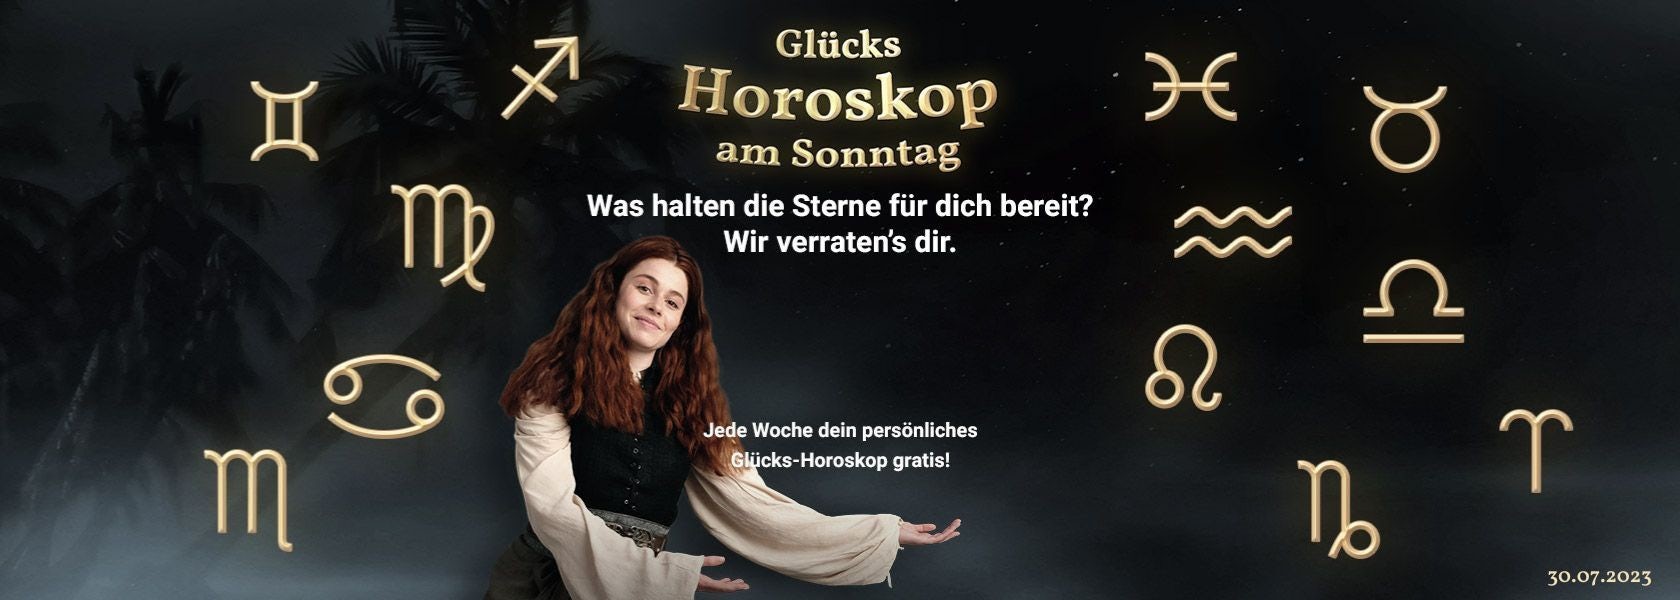 JackpotPiraten-Gluecks-Horoskop-30-07-2023